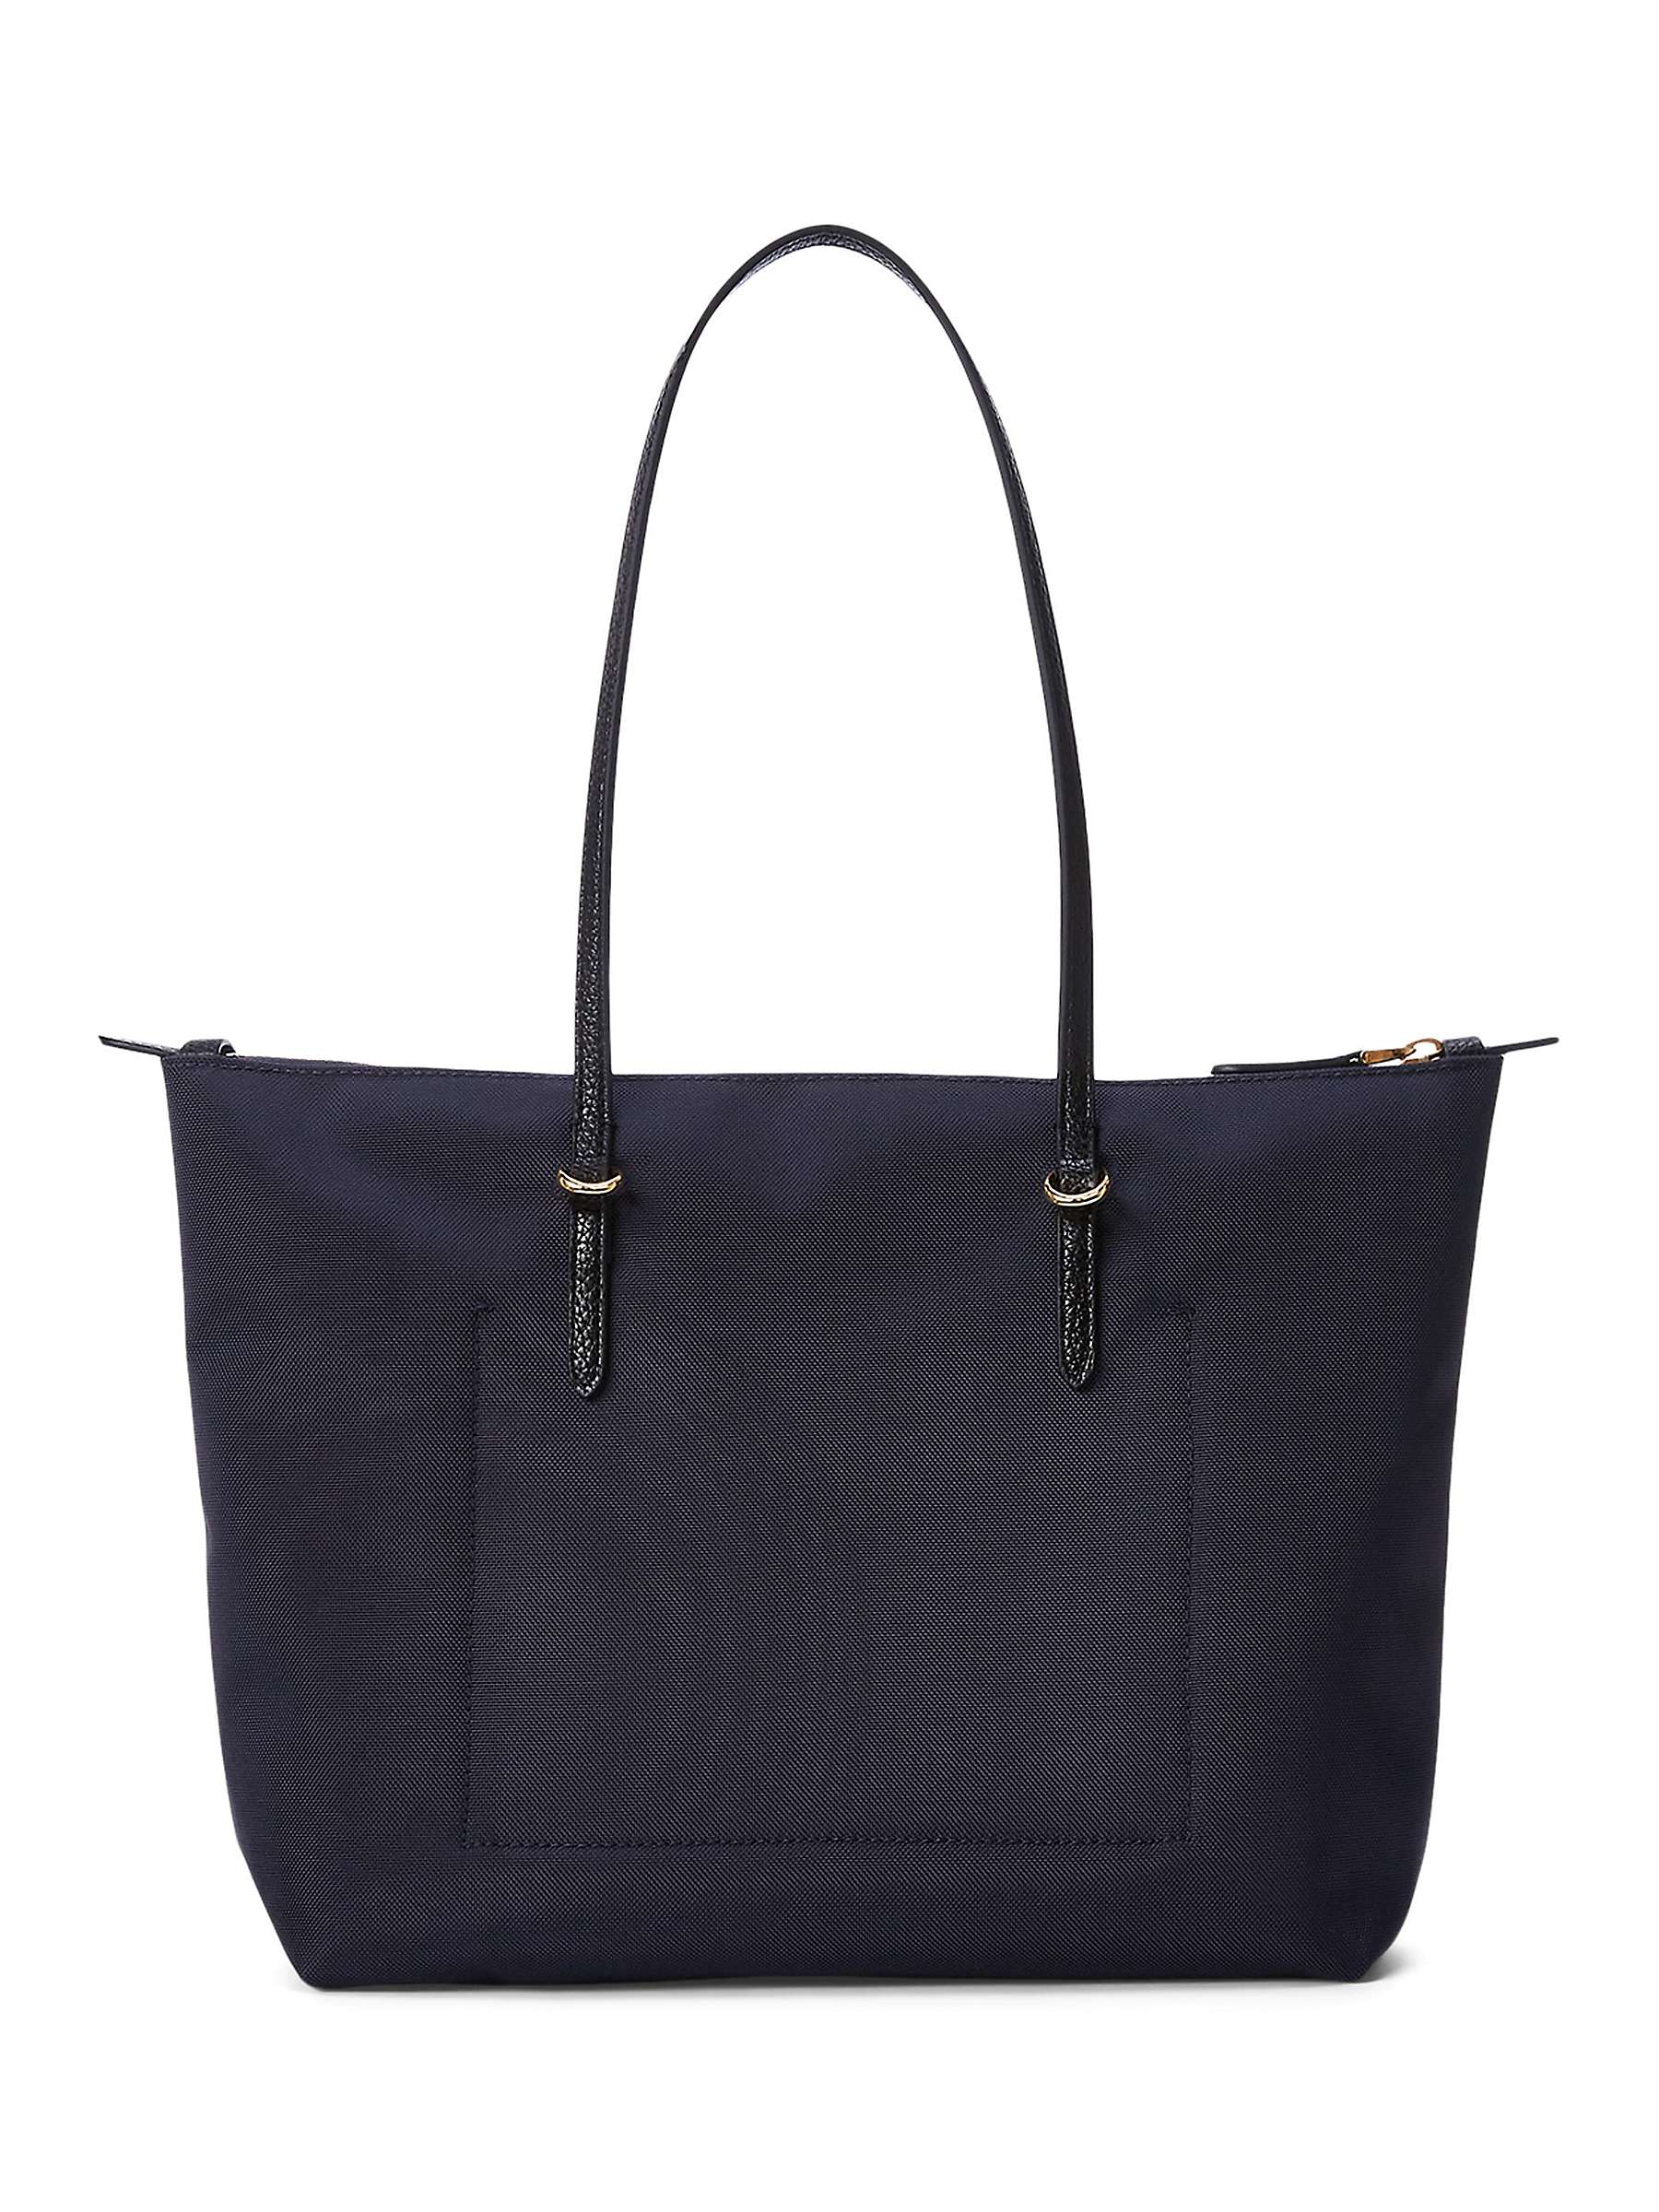 Buy Lauren Ralph Lauren Keaton 26 Shopper Bag, French Navy Online at johnlewis.com